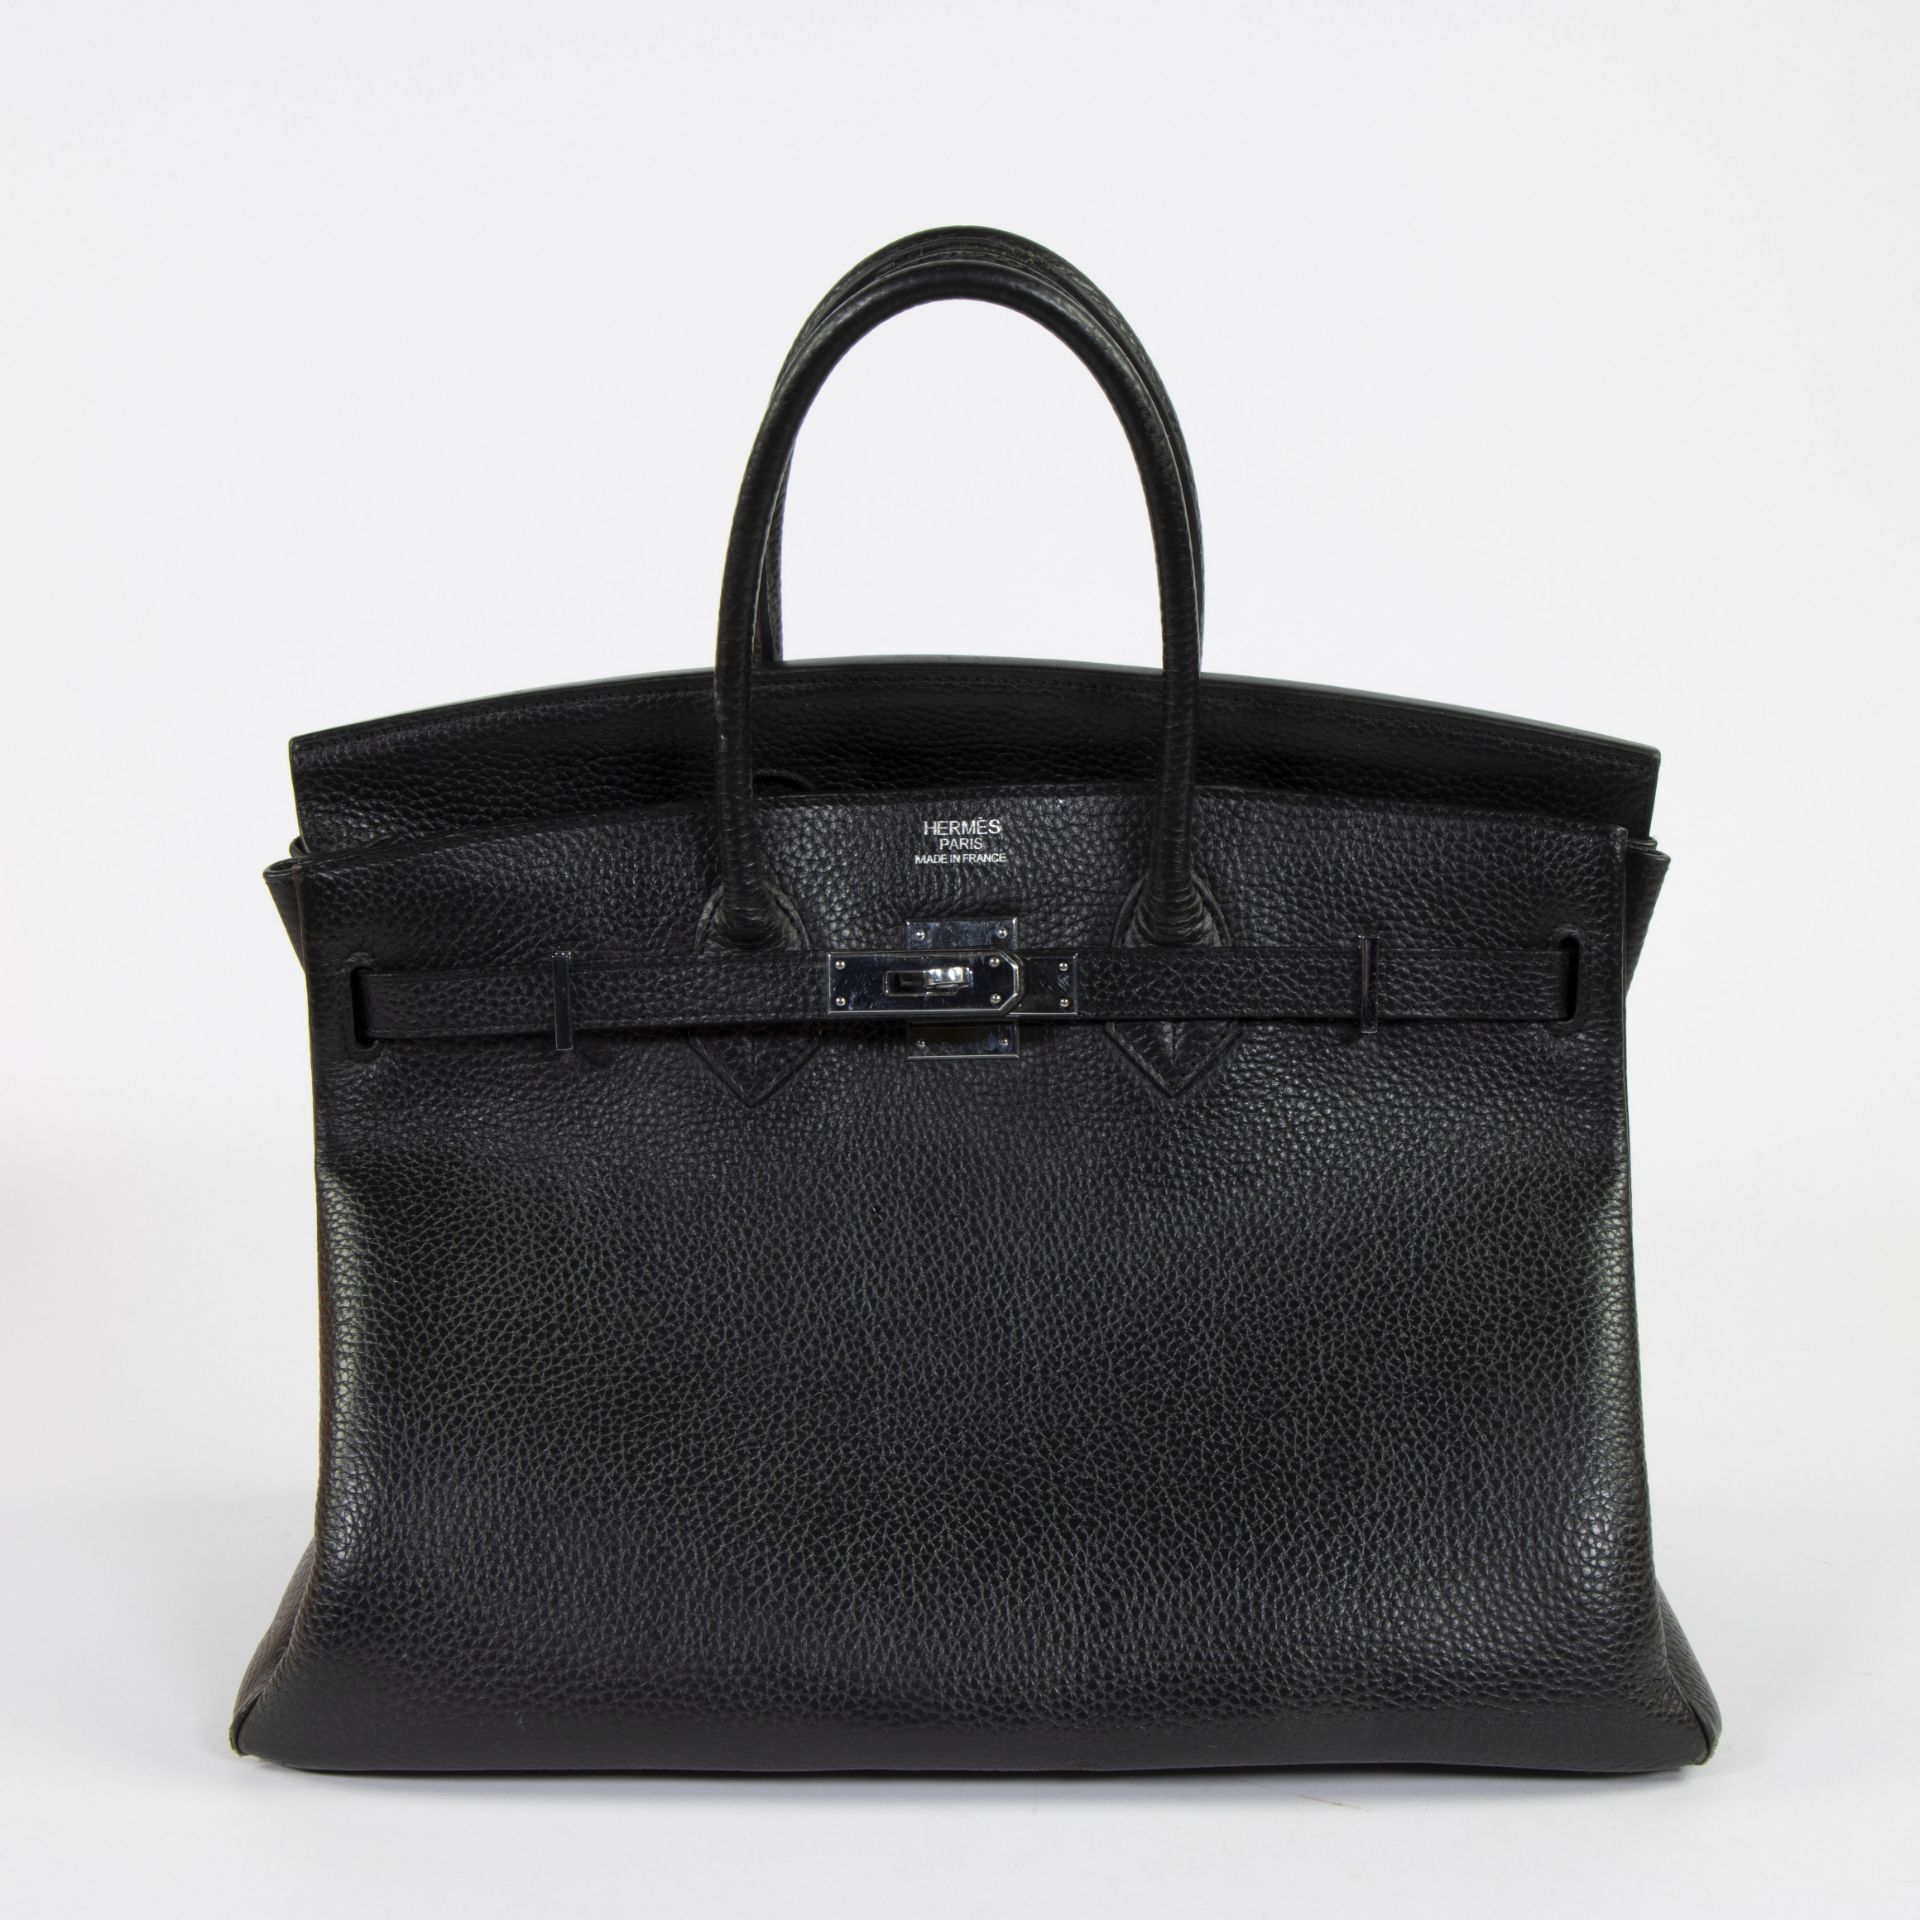 Birkin bag by Hermès Paris - Image 2 of 6